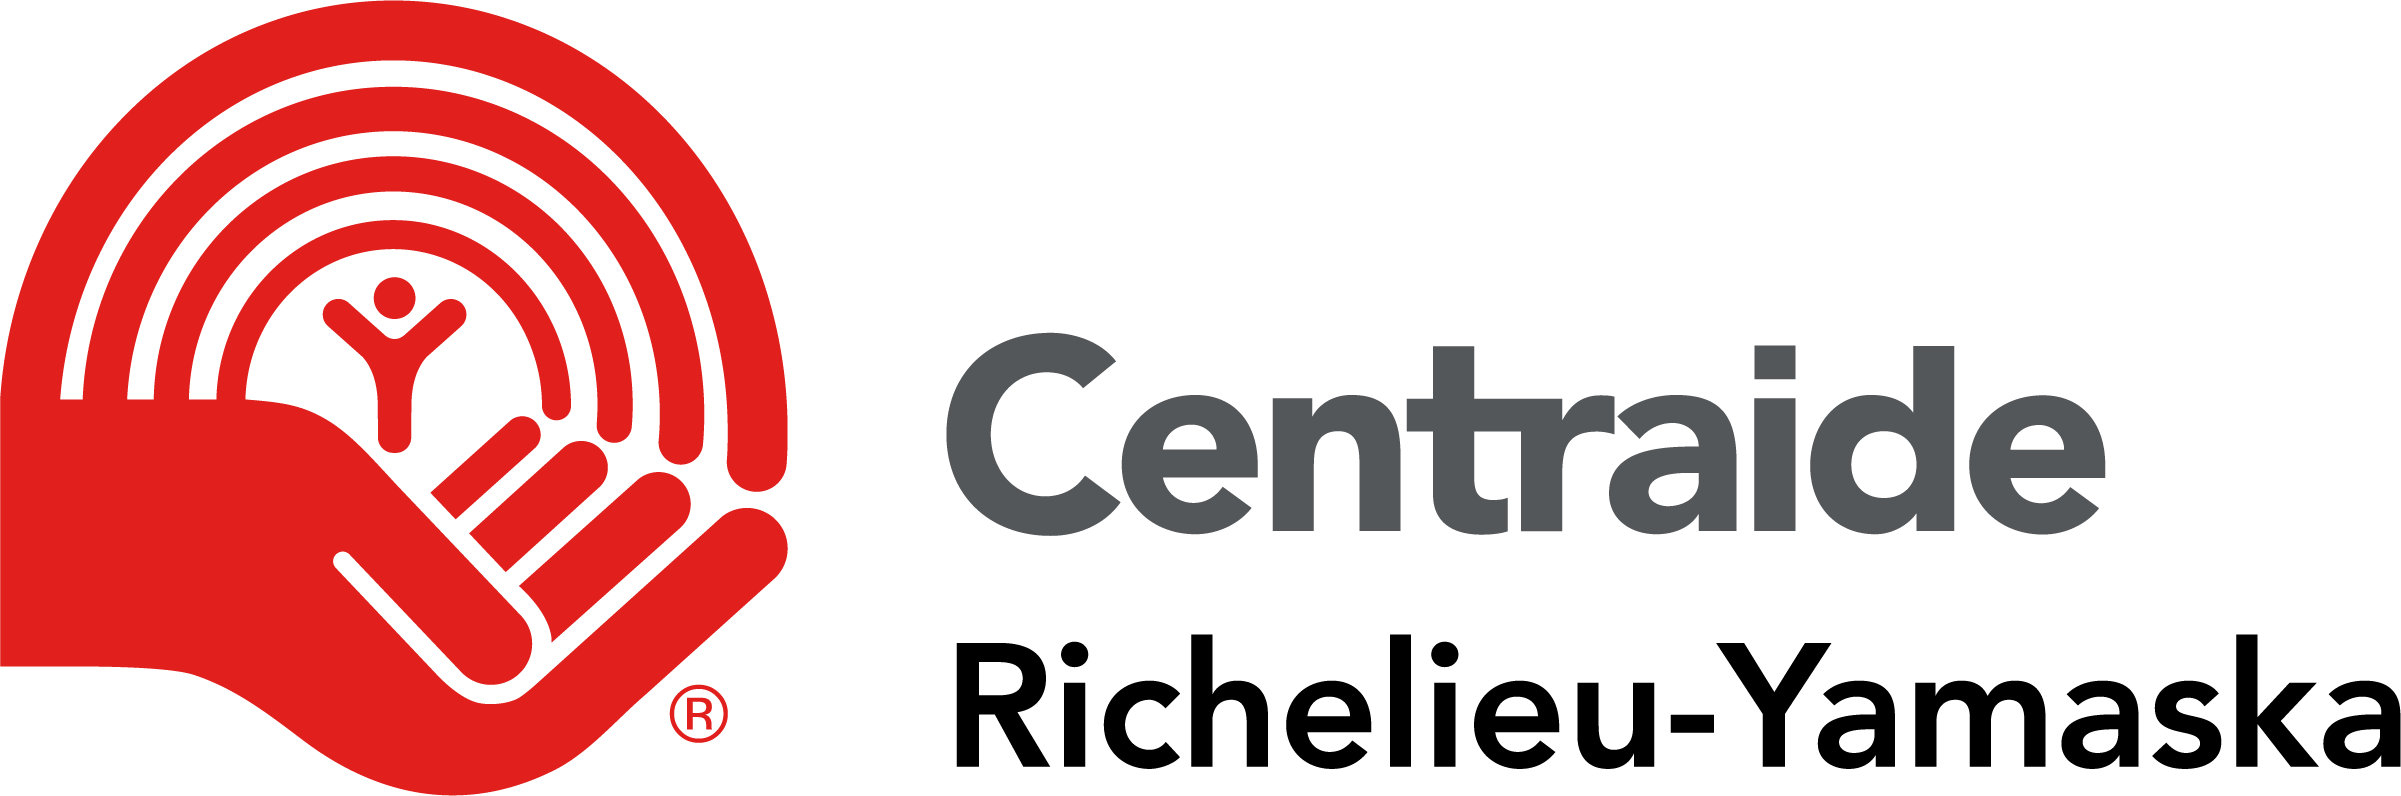 Centraide logo